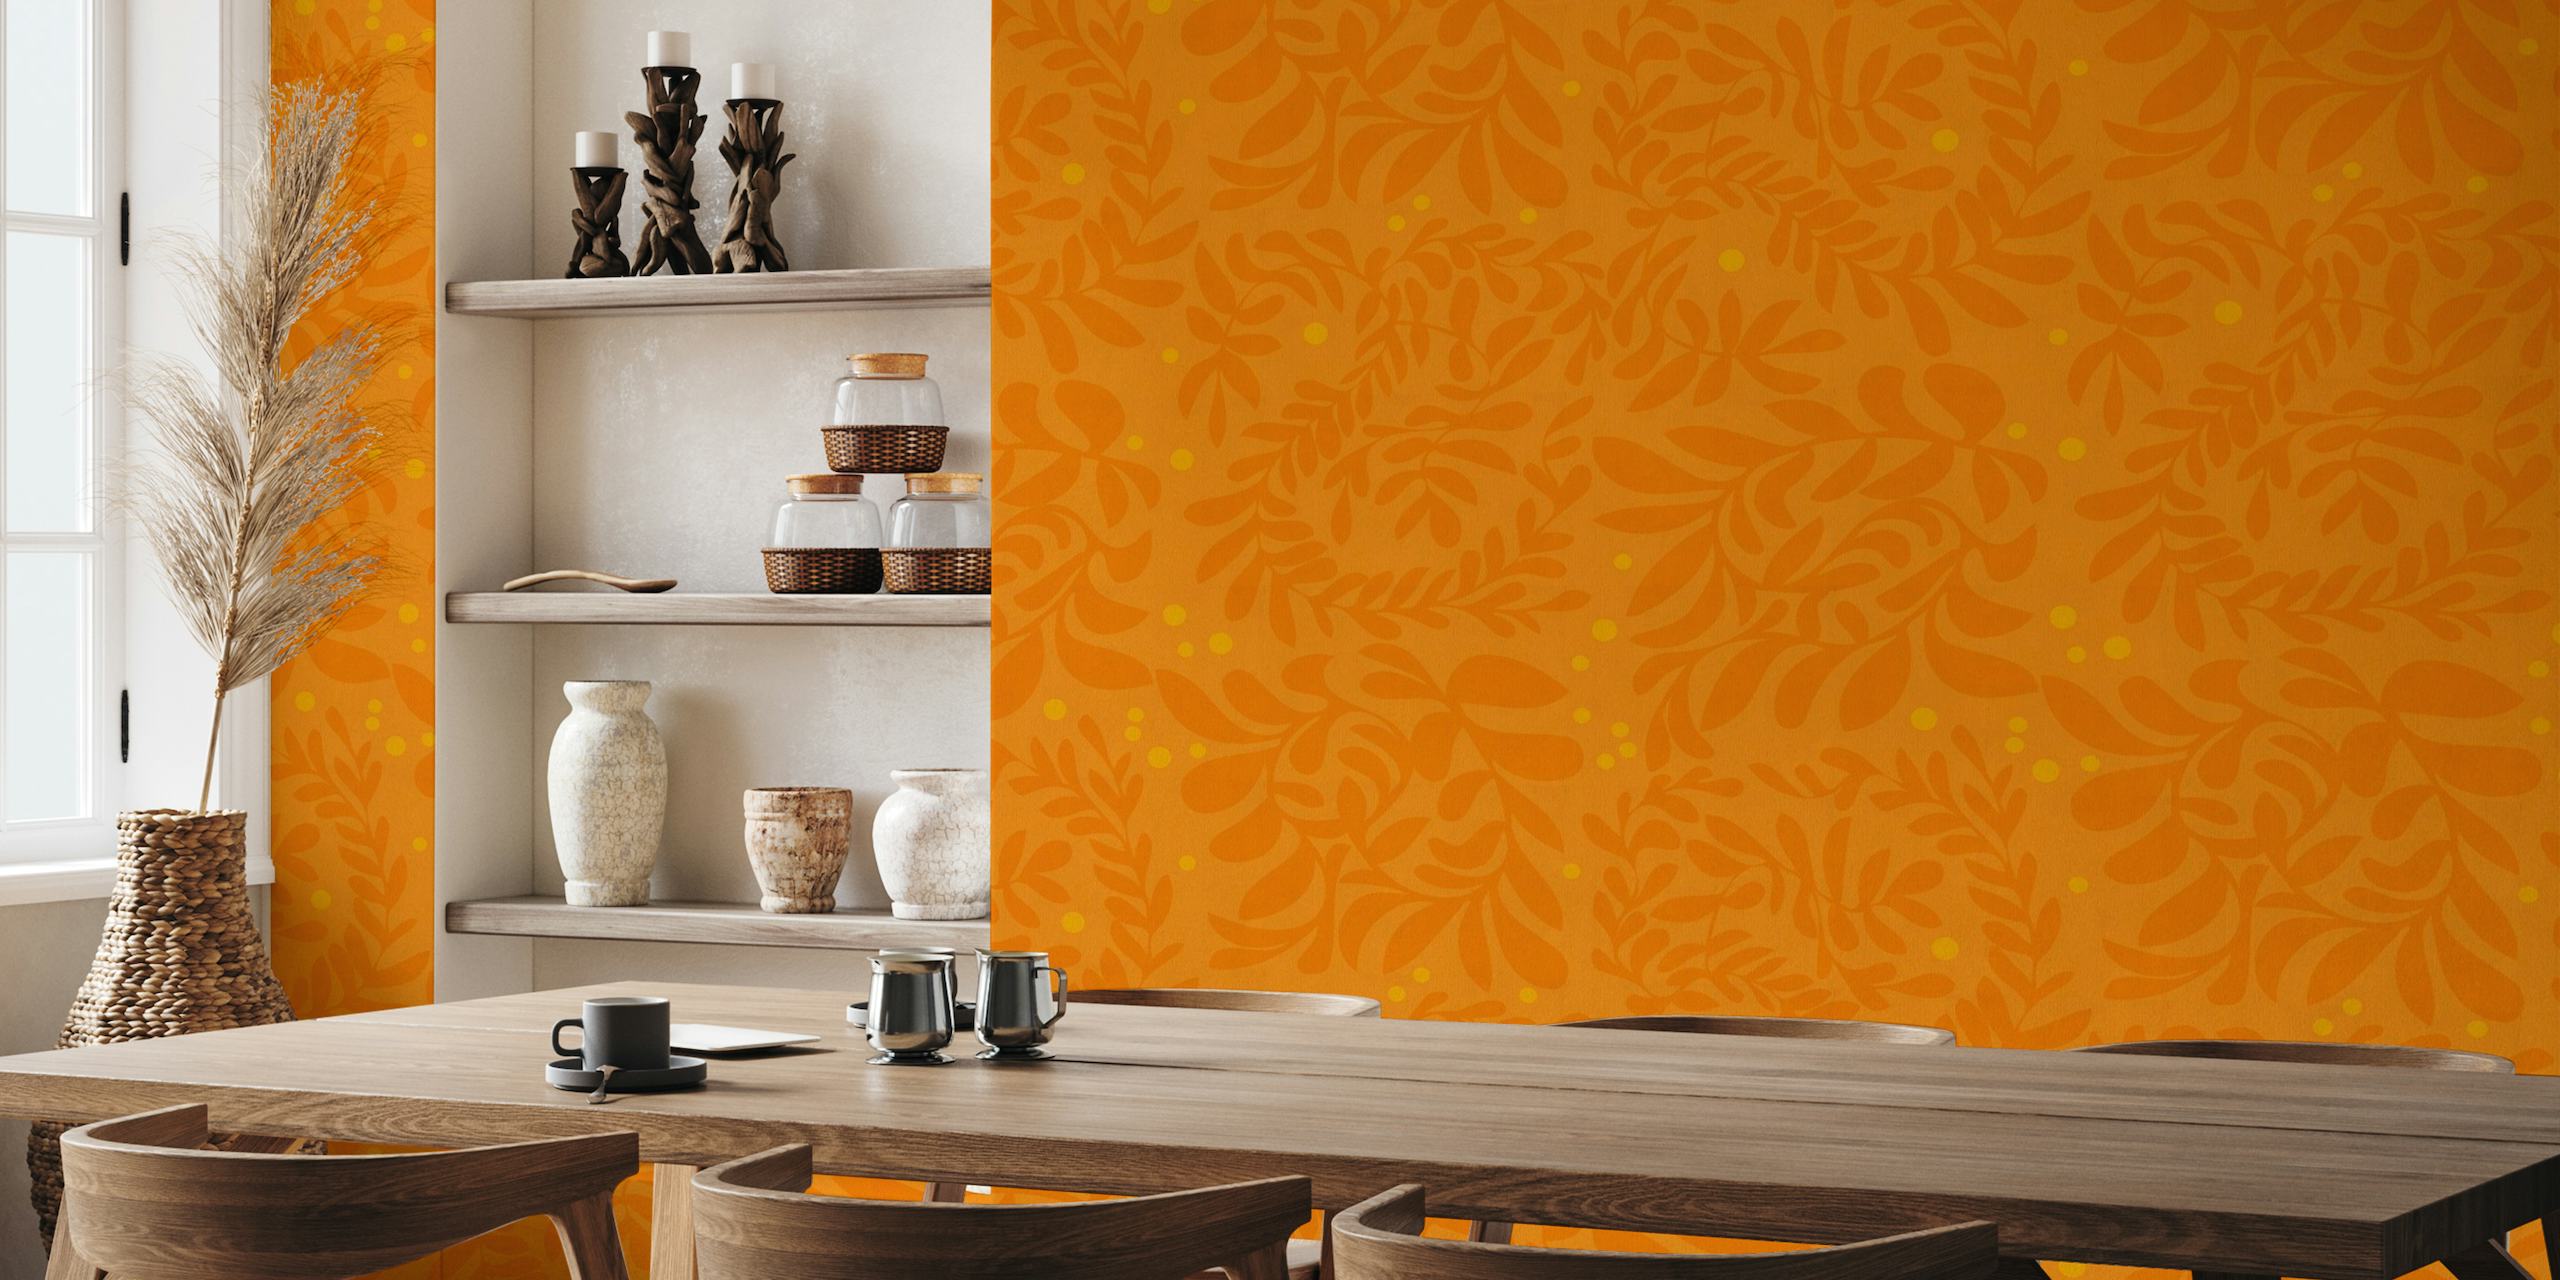 Papier peint mural d'inspiration automnale avec un motif de feuilles sur fond orange.